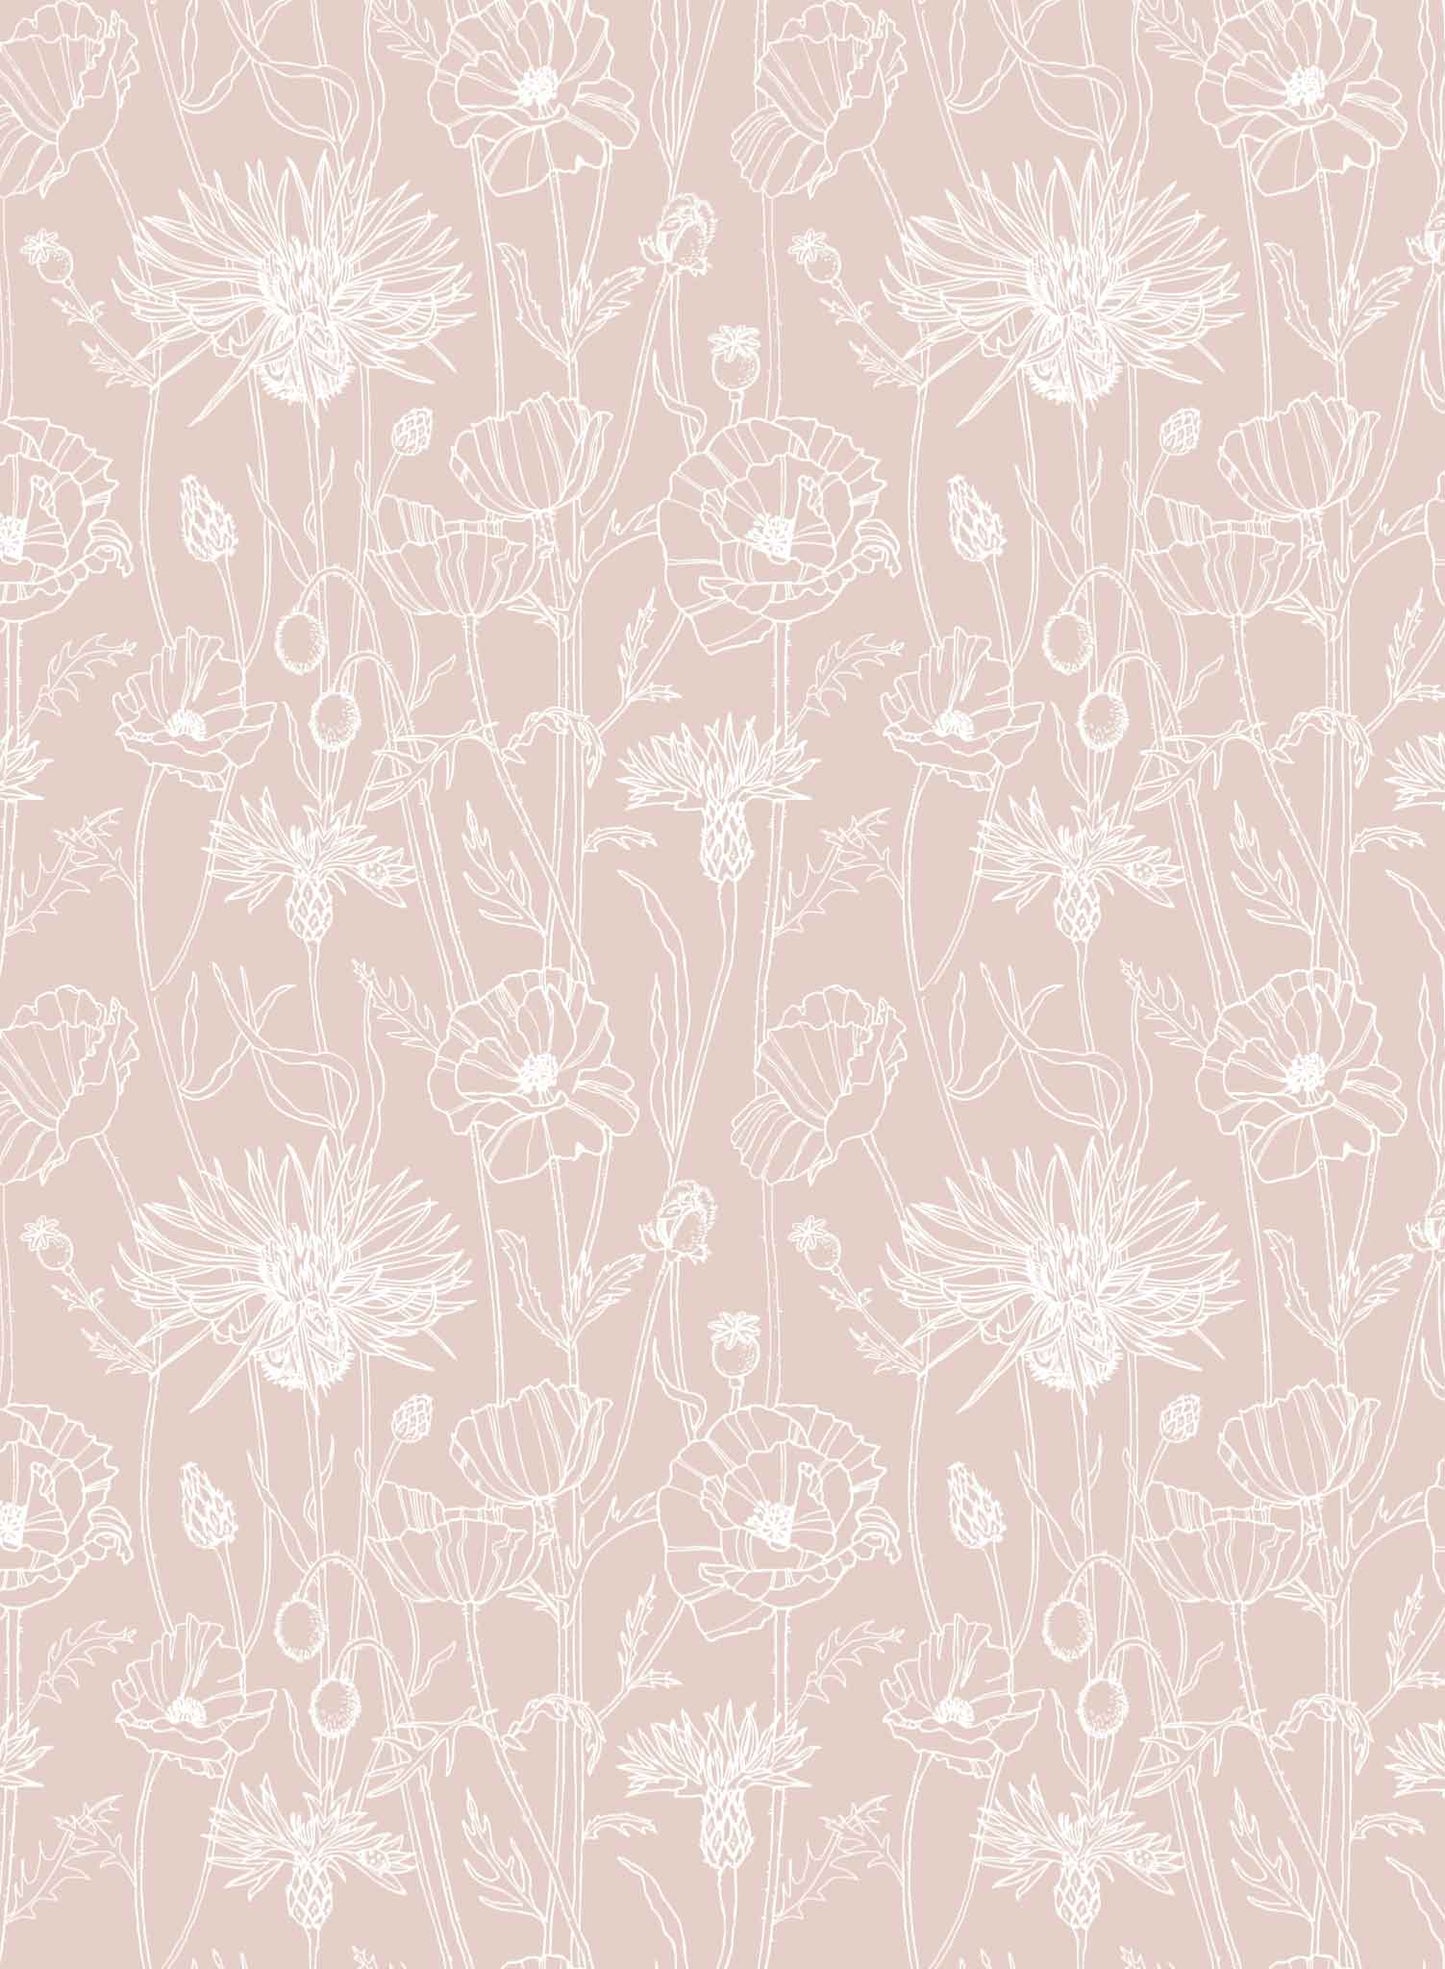 Poppy Field is a minimalist wallpaper by Opposite Wall of a field of tall poppy flowers.